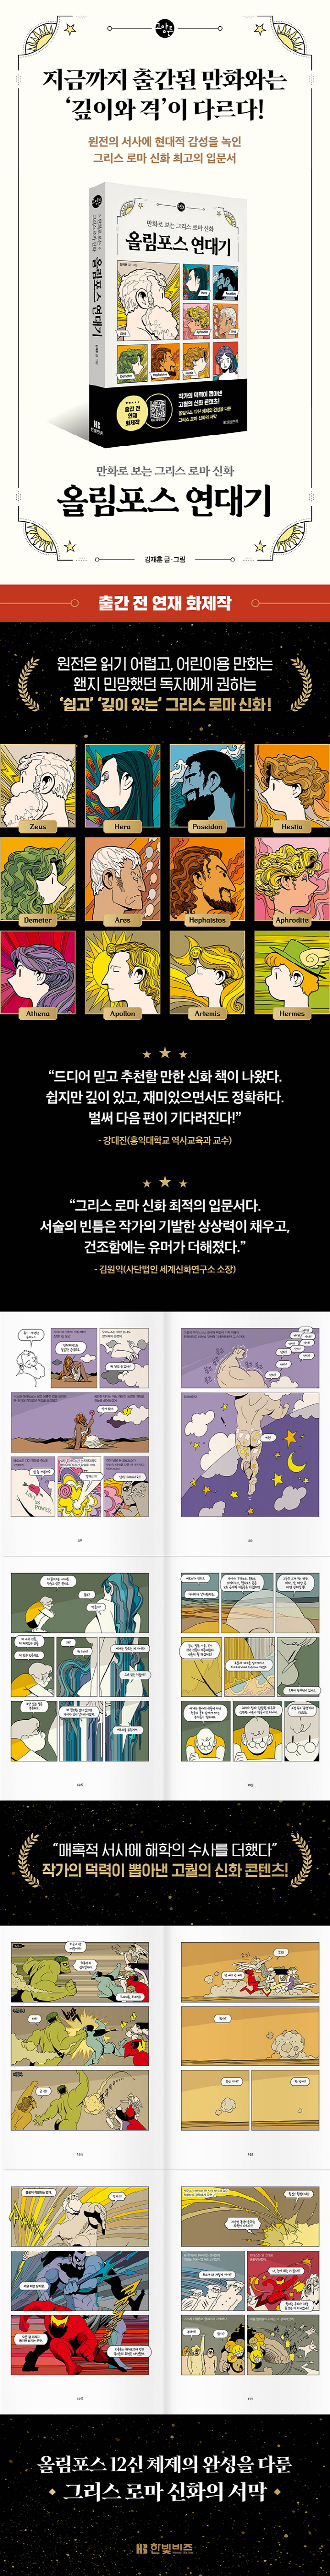 올림포스 연대기(한빛비즈 교양툰 16) 도서 상세이미지